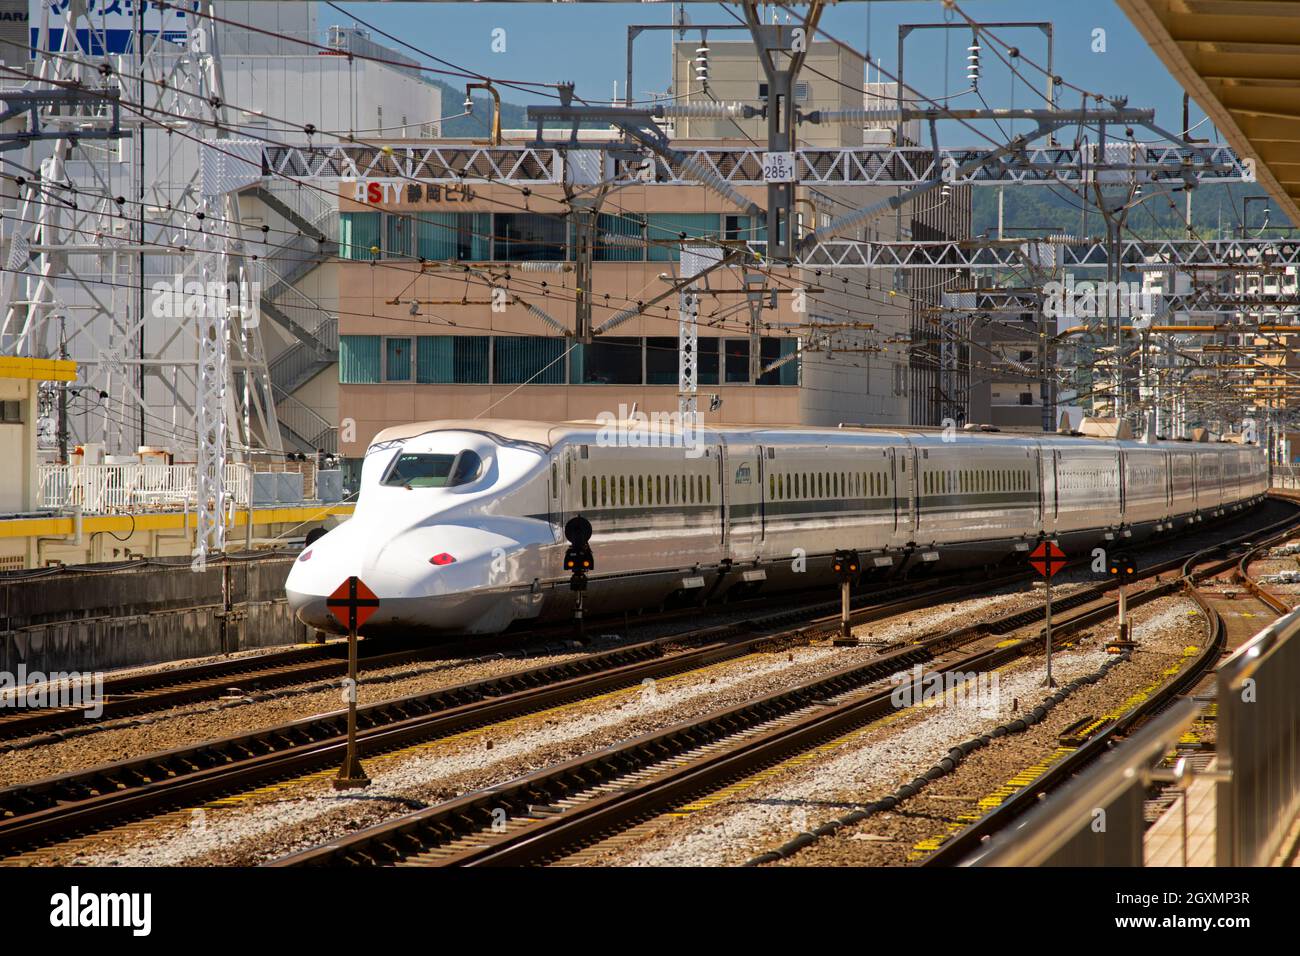 El tren de alta velocidad o shinkansen llega a la plataforma de la estación Shimizu, Shimizu, Japón Foto de stock